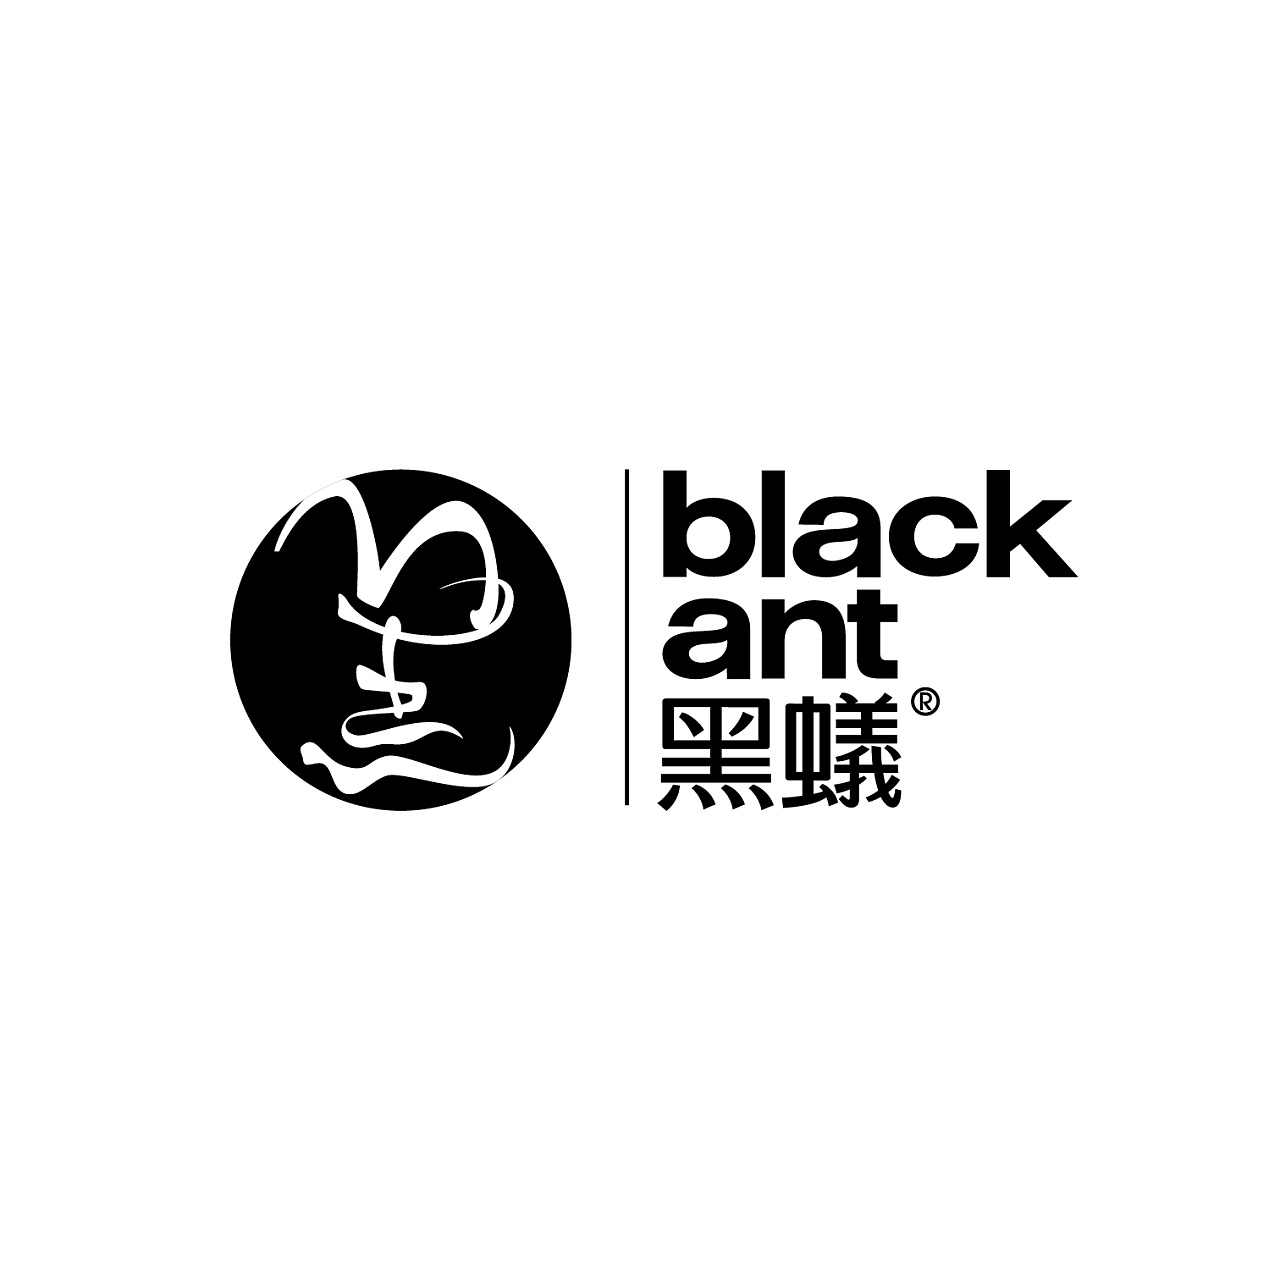 对黑蚁logo的思考